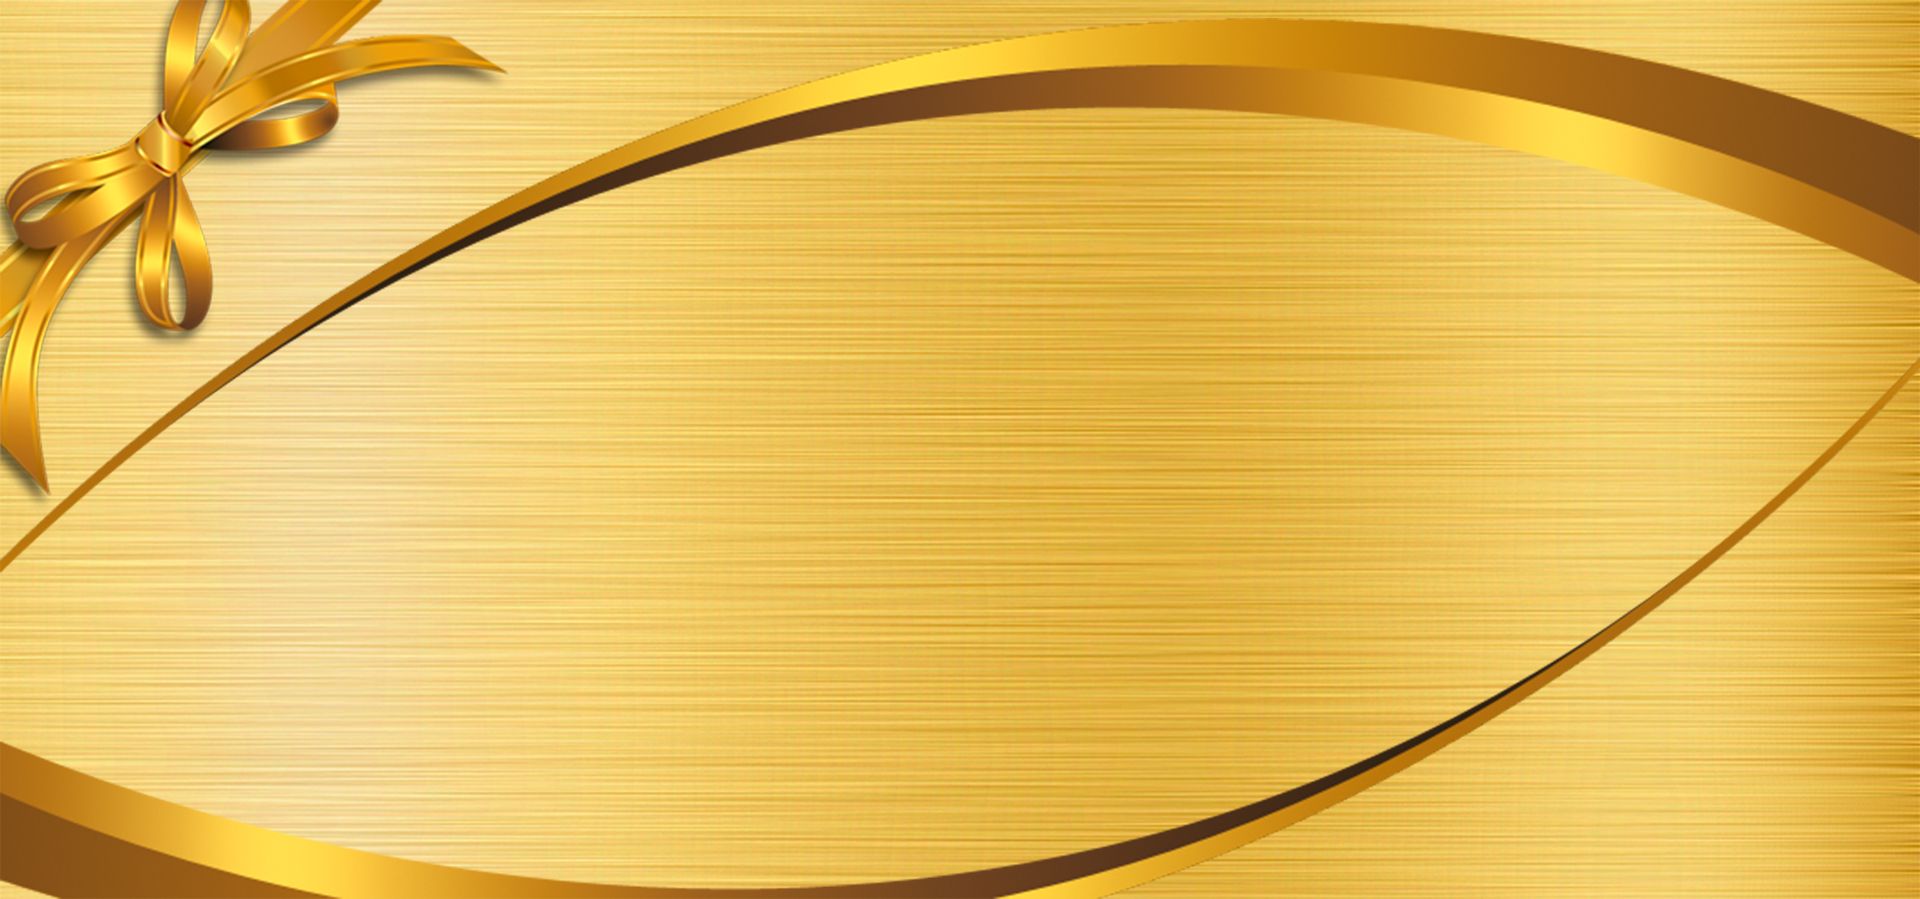 Hình Nền Nền Vàng Công Nghệ Vàng đen HD và Nền Cờ đẹp vàng đen dây  chuyền công nghệ để Tải Xuống Miễn Phí  Lovepik